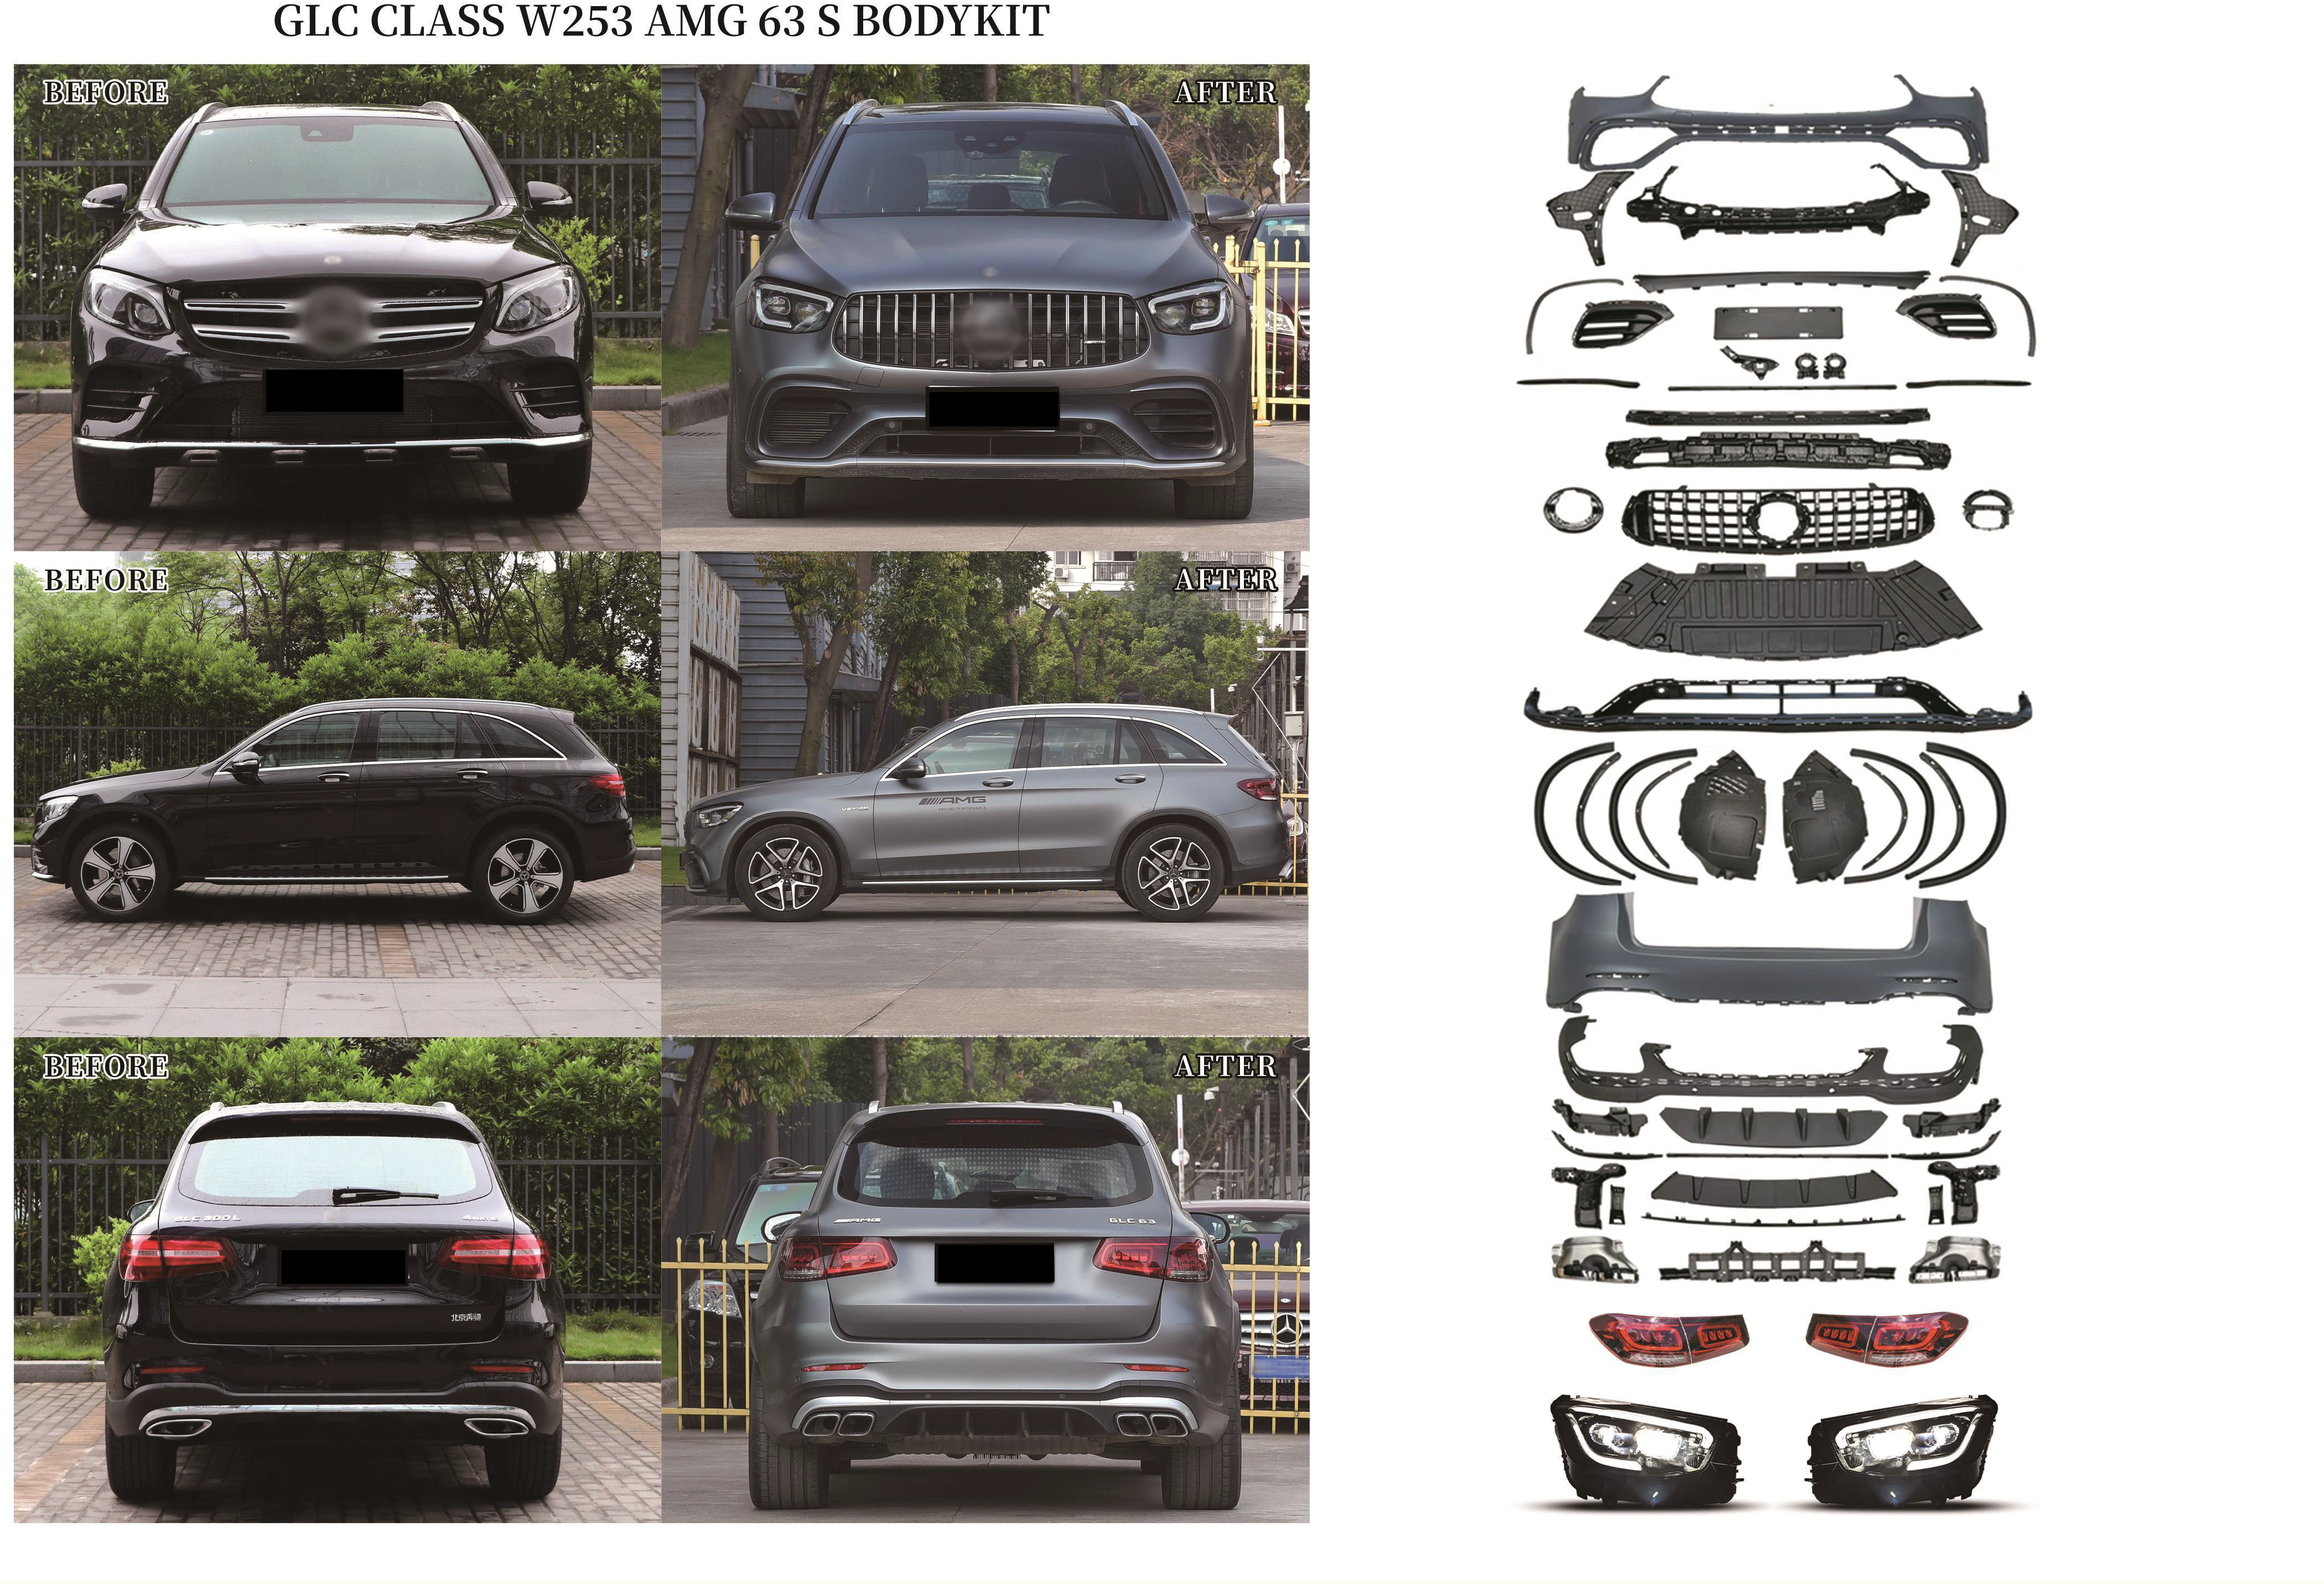 Body Kit for Mercedes Benz Glc X253 Modified to Glc 63 Amg Style - China Amg  Body Kit, Auto Body Kit